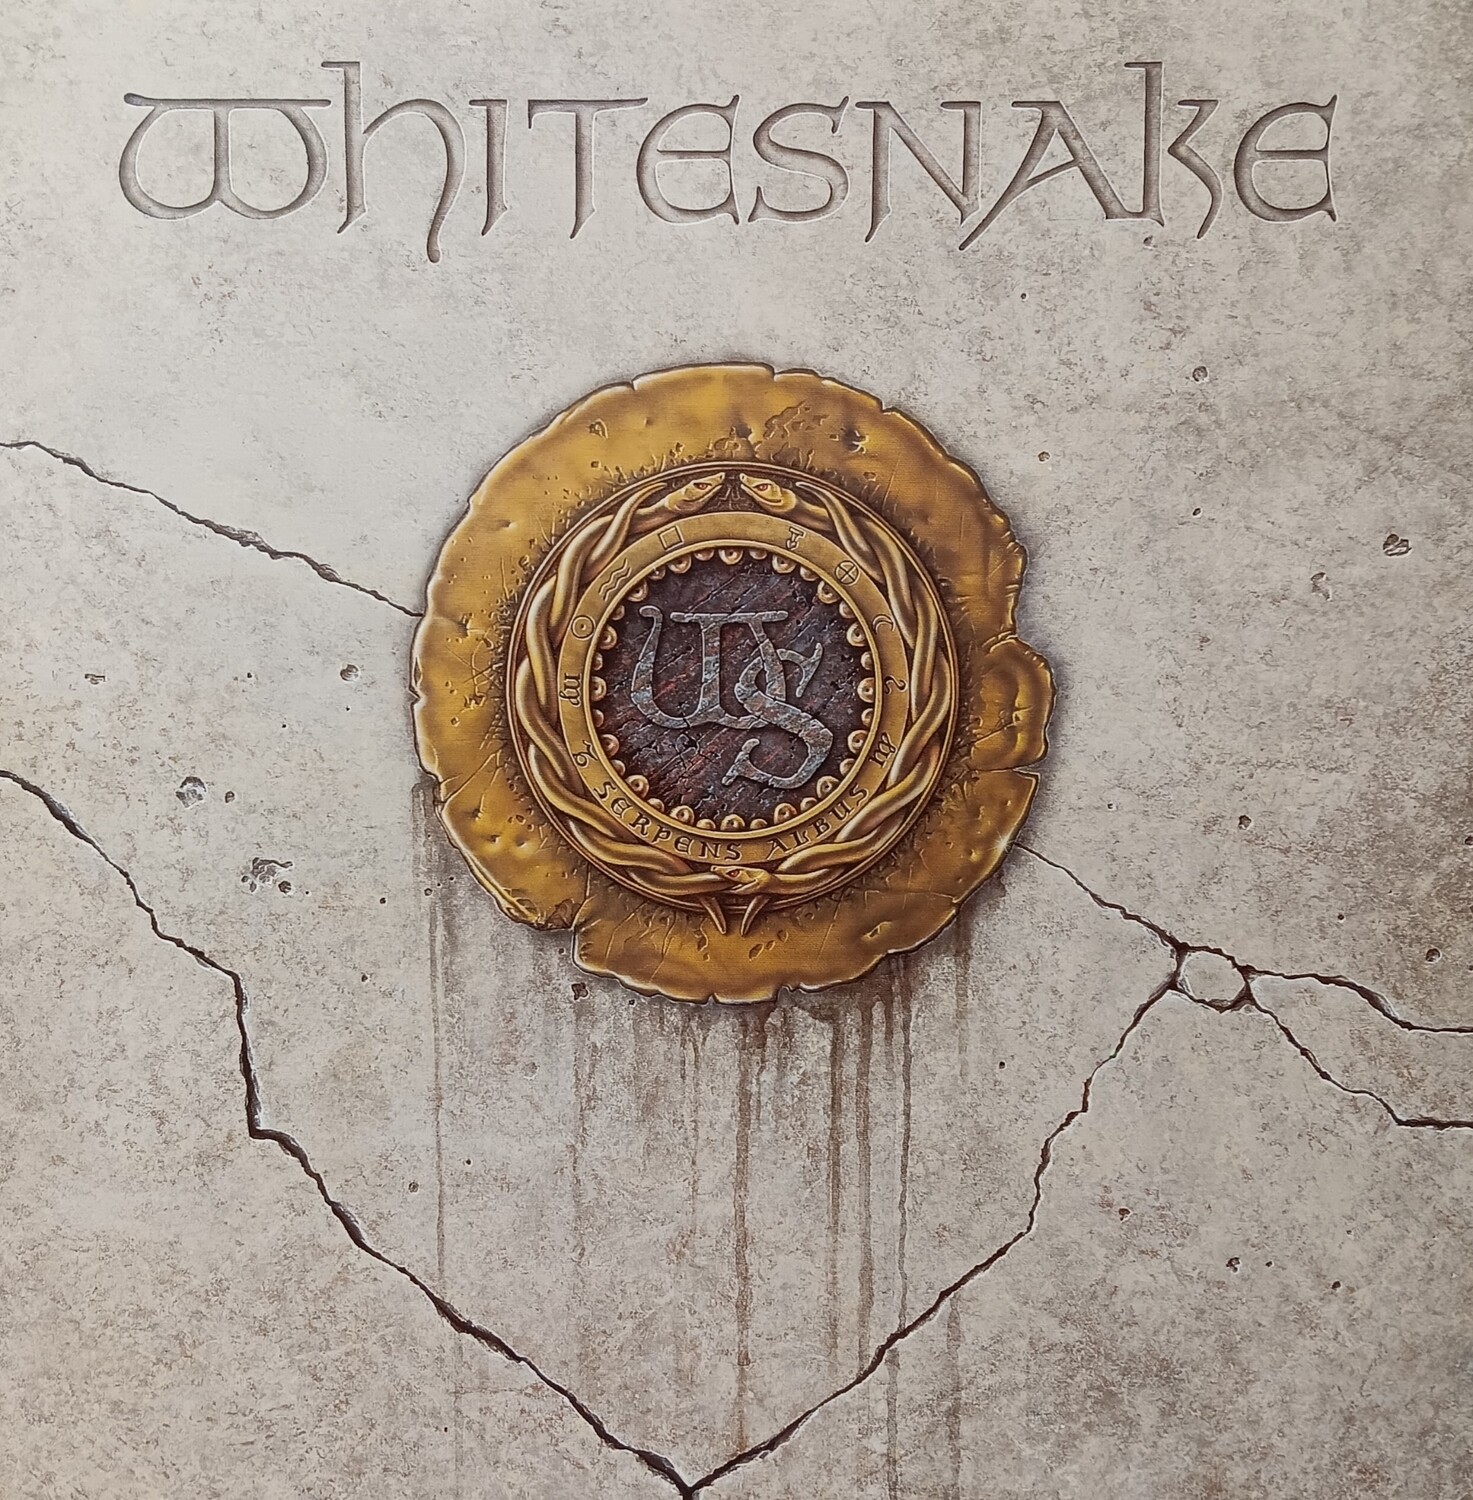 WHITESNAKE - Whitesnake